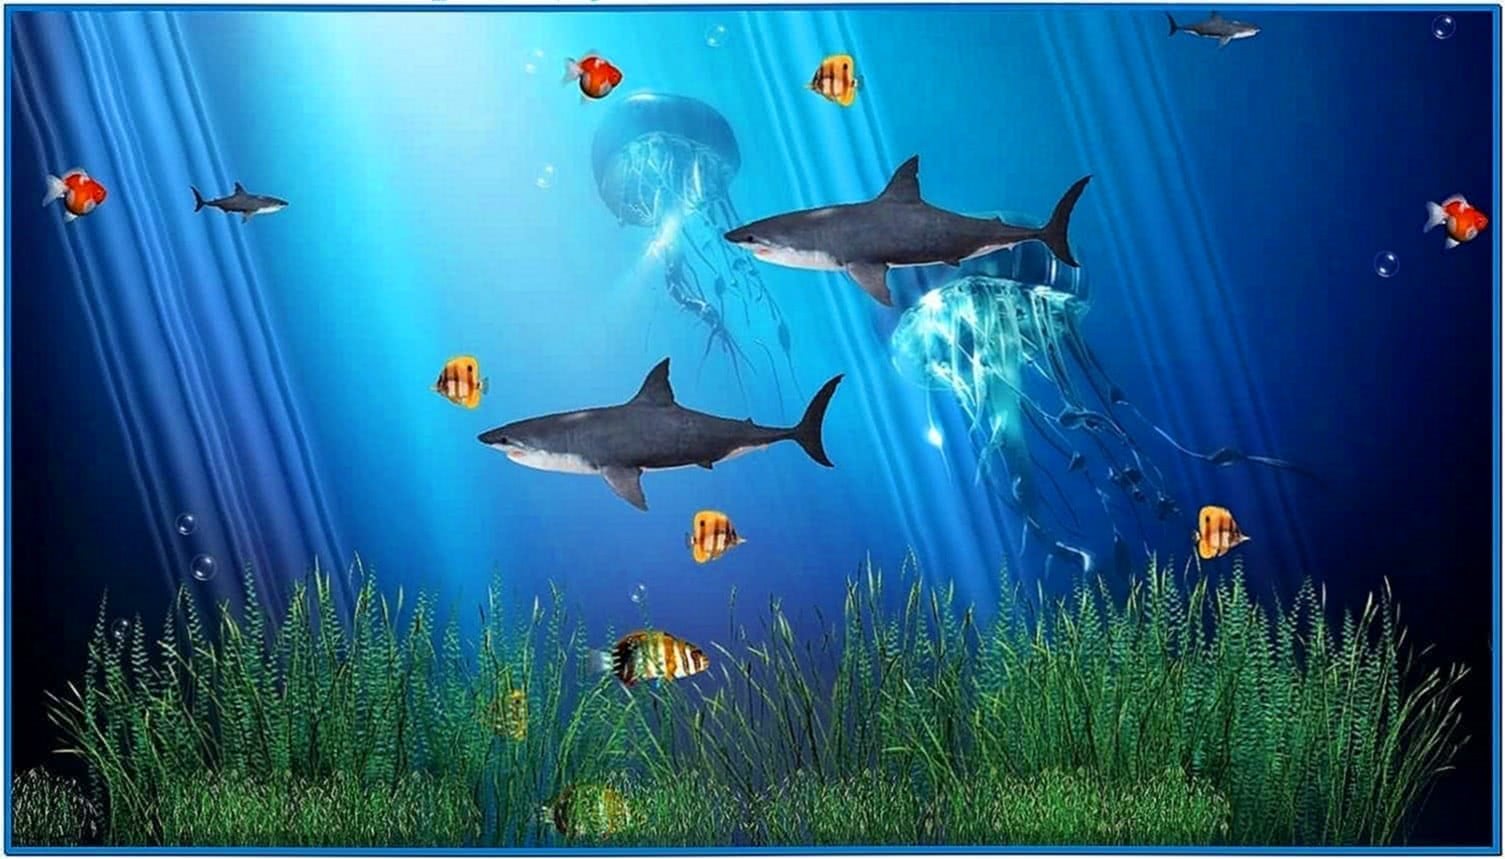 Animated Aquarium Screensavers Windows 7 Download Screensavers Biz